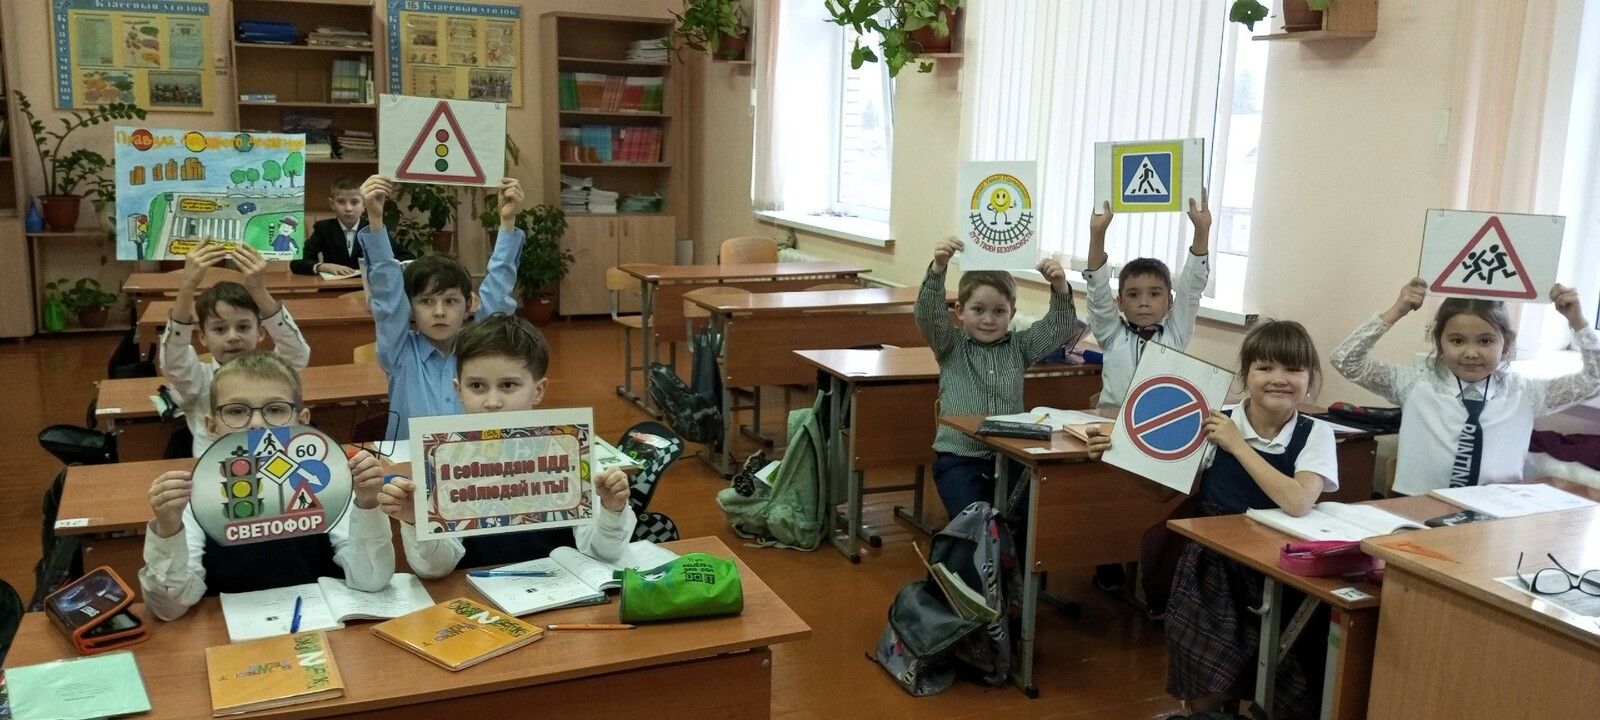 В школе Гафурийского района состоялся ряд мероприятий в рамках акции "Внимание - дети!"